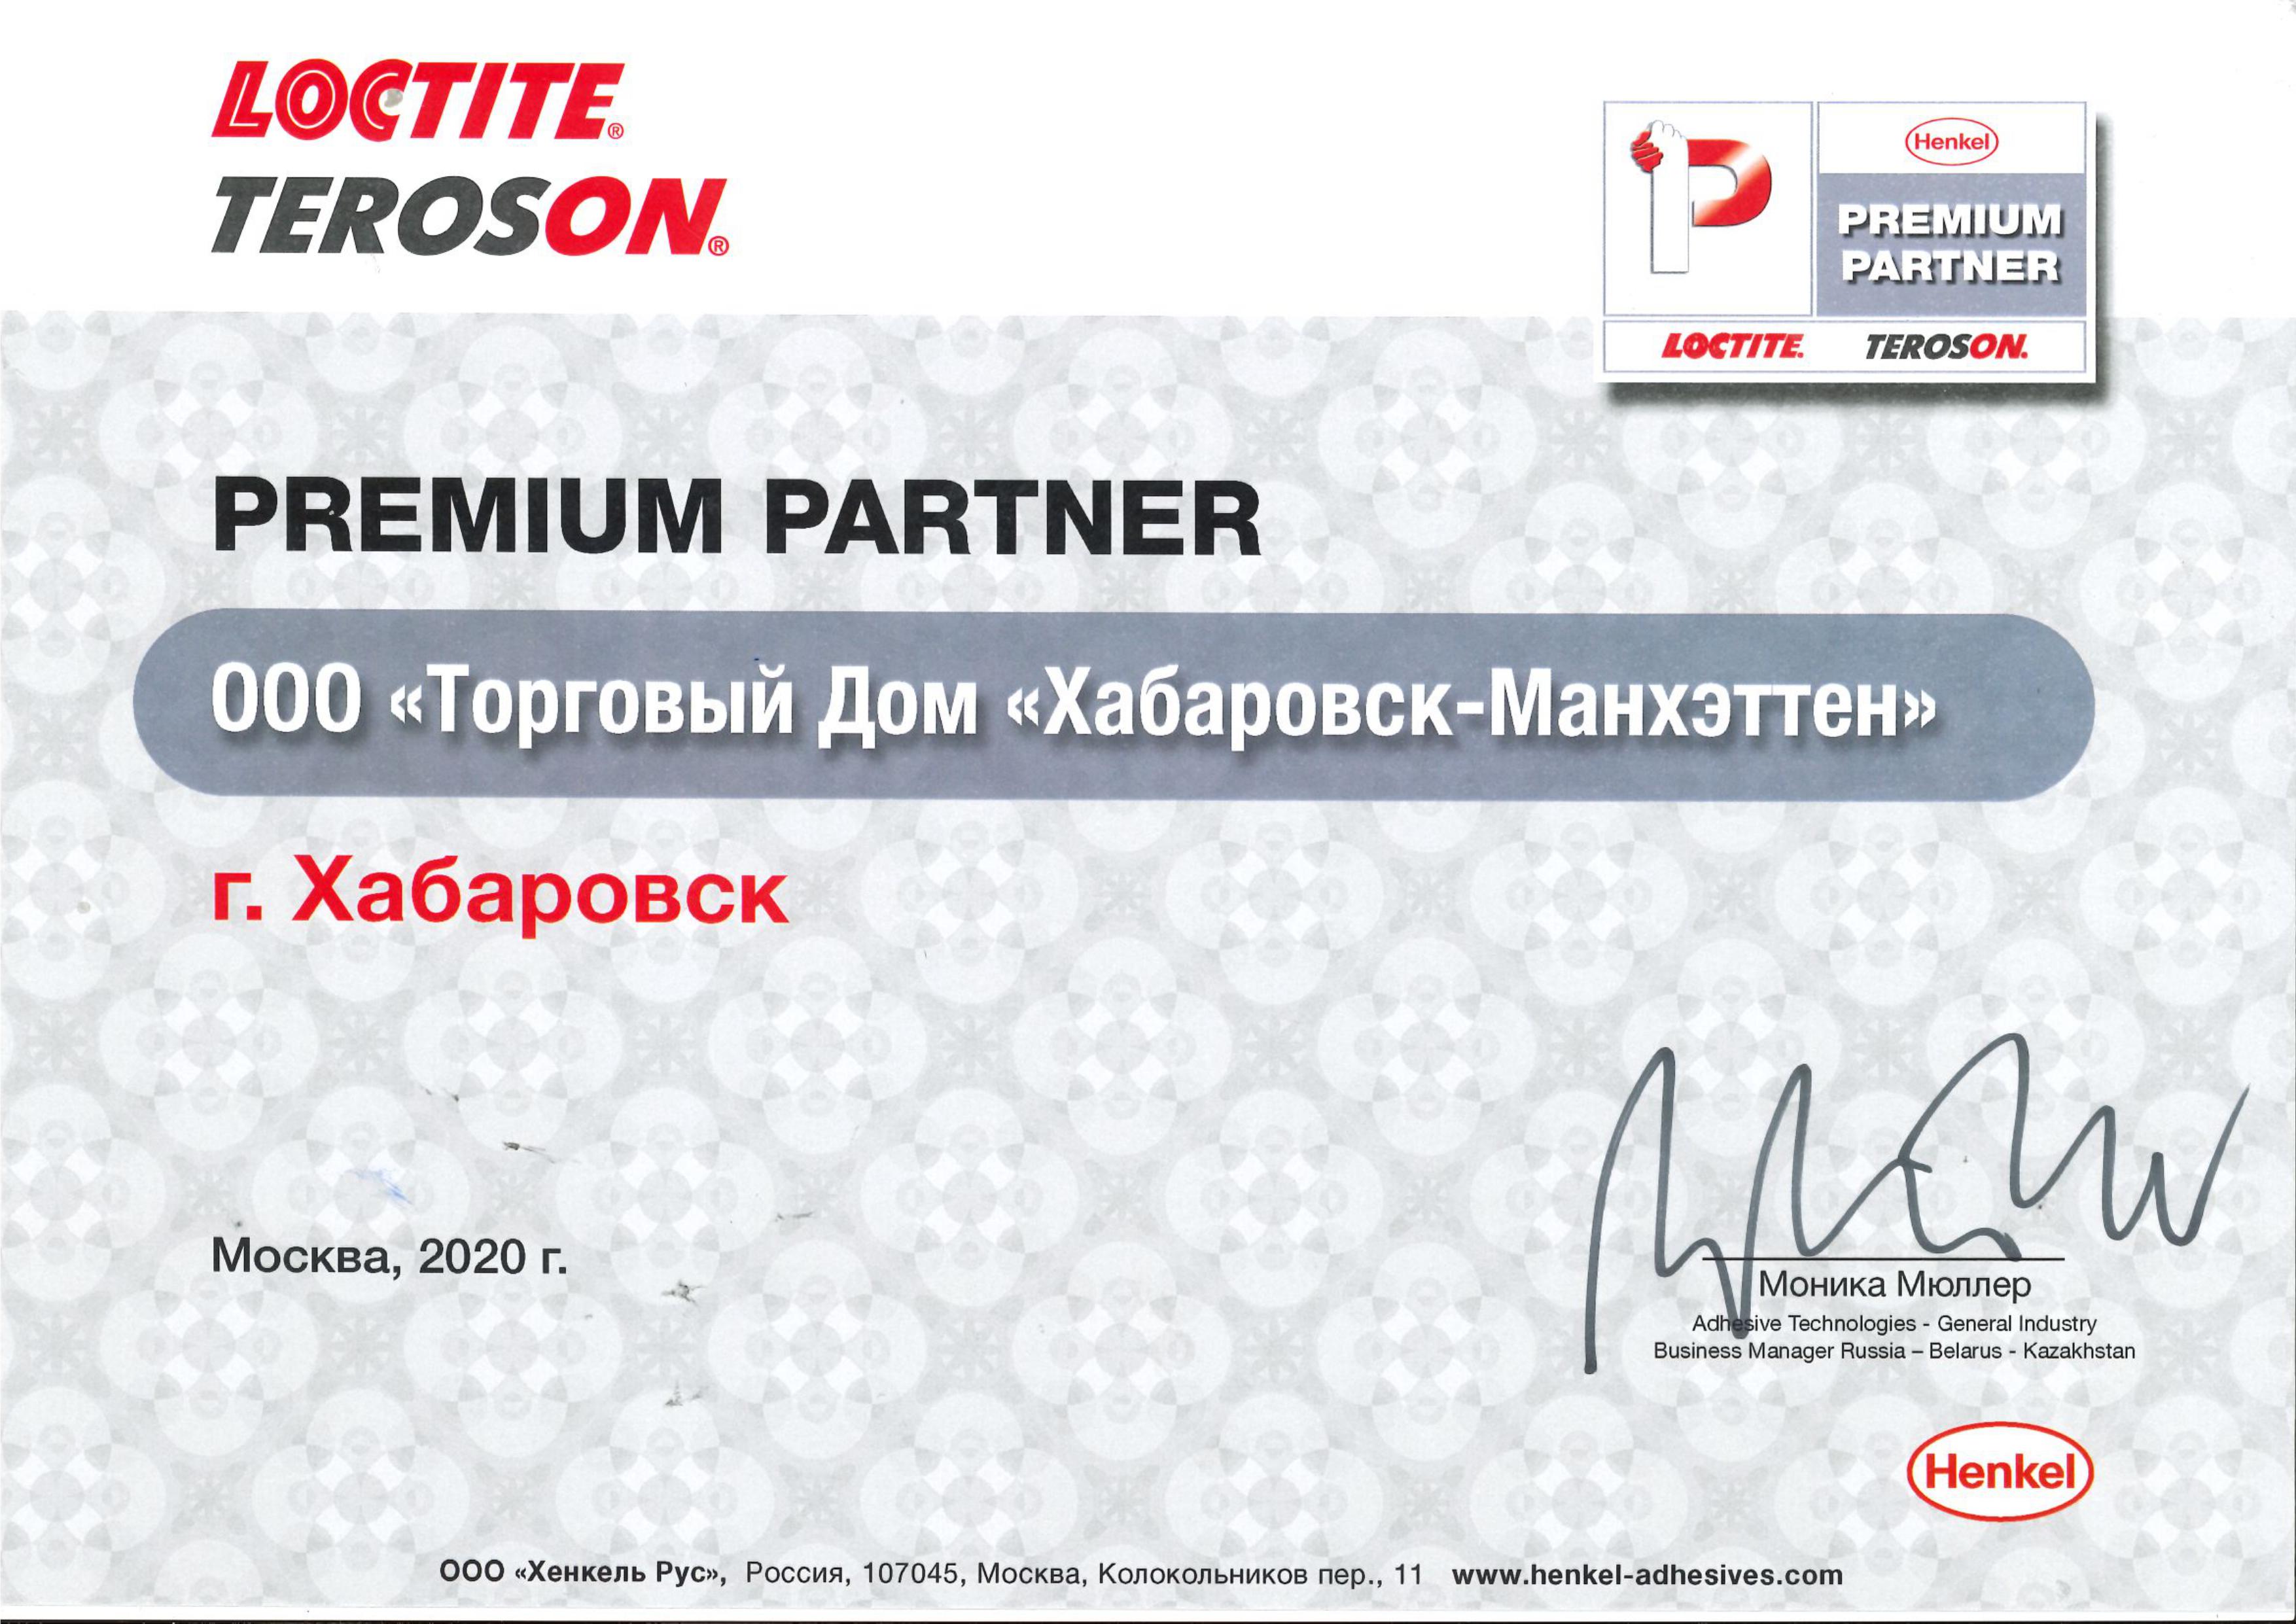 Premium Partner Certificate